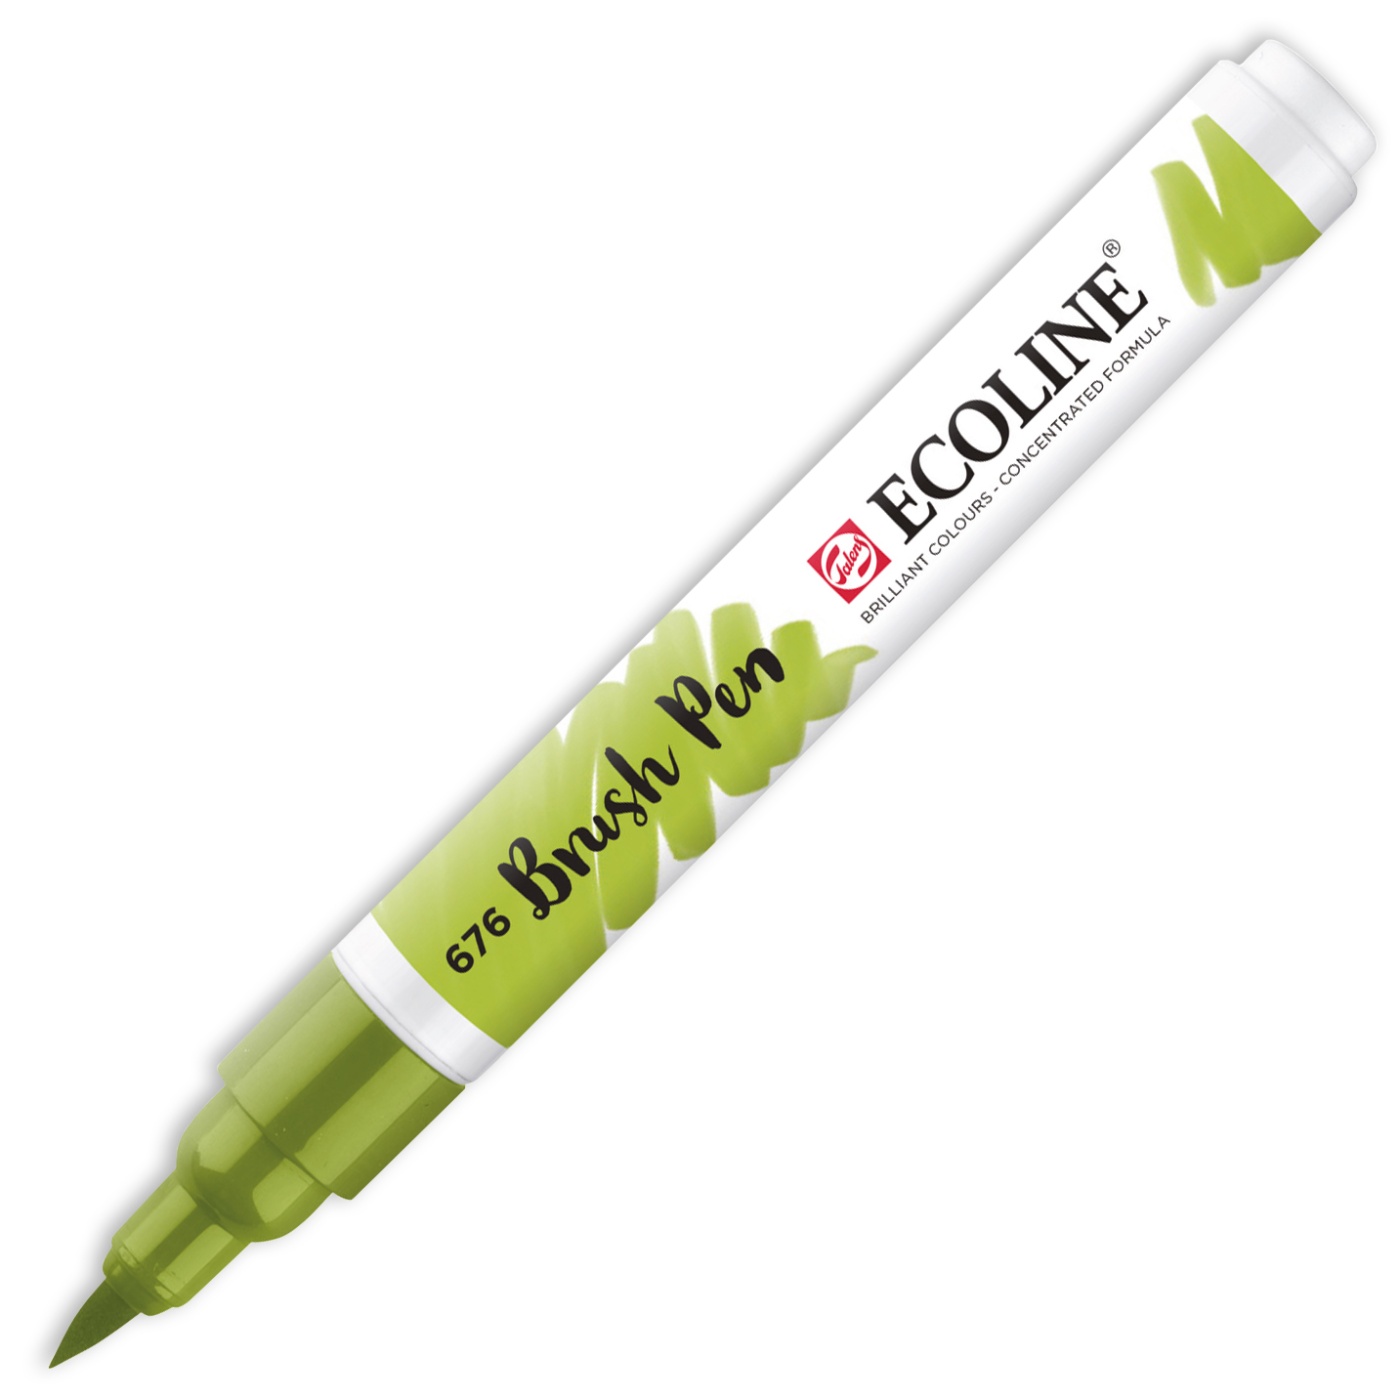 Ecoline Brush Pen | Store